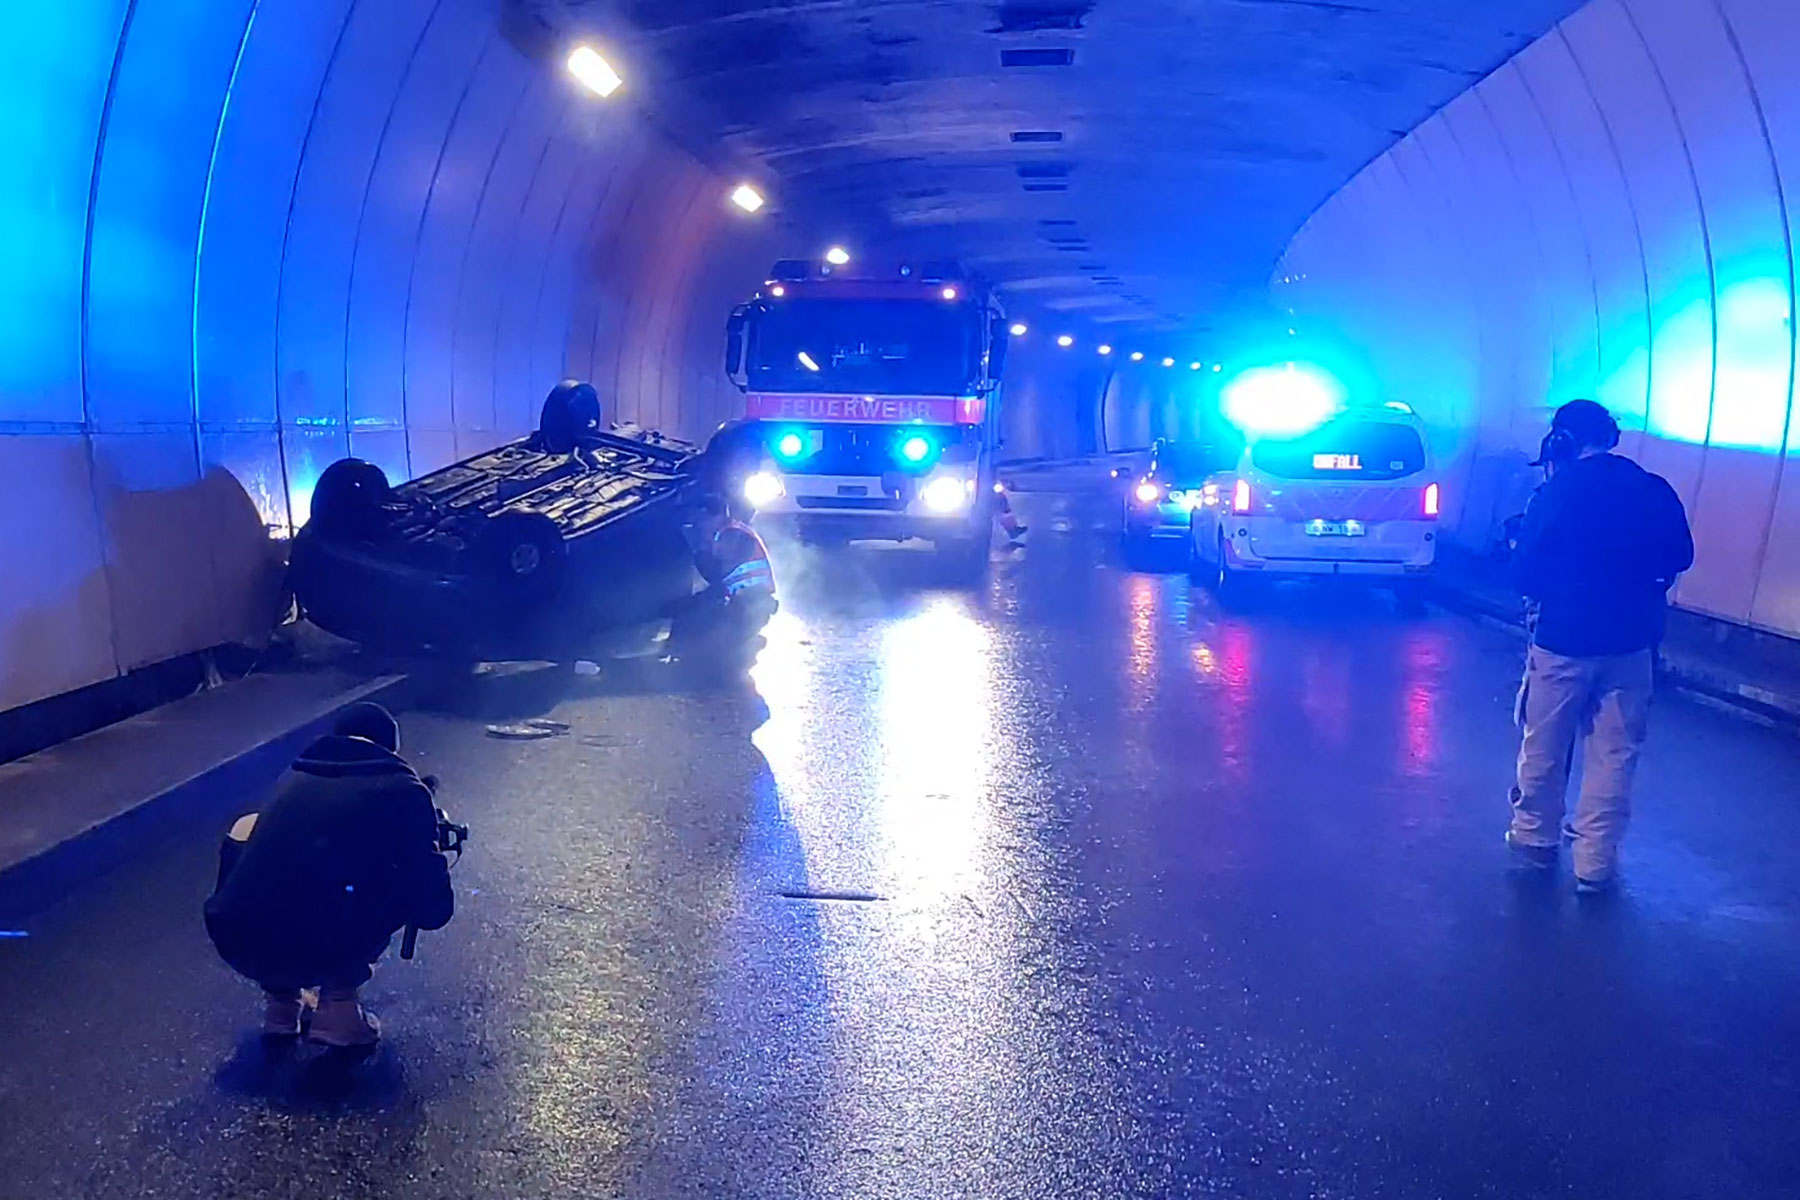 Die Kantonspolizei dreht einen neuen Videofilm. Da braucht es natürlich auch eine Szene mit Feuerwehrauto.